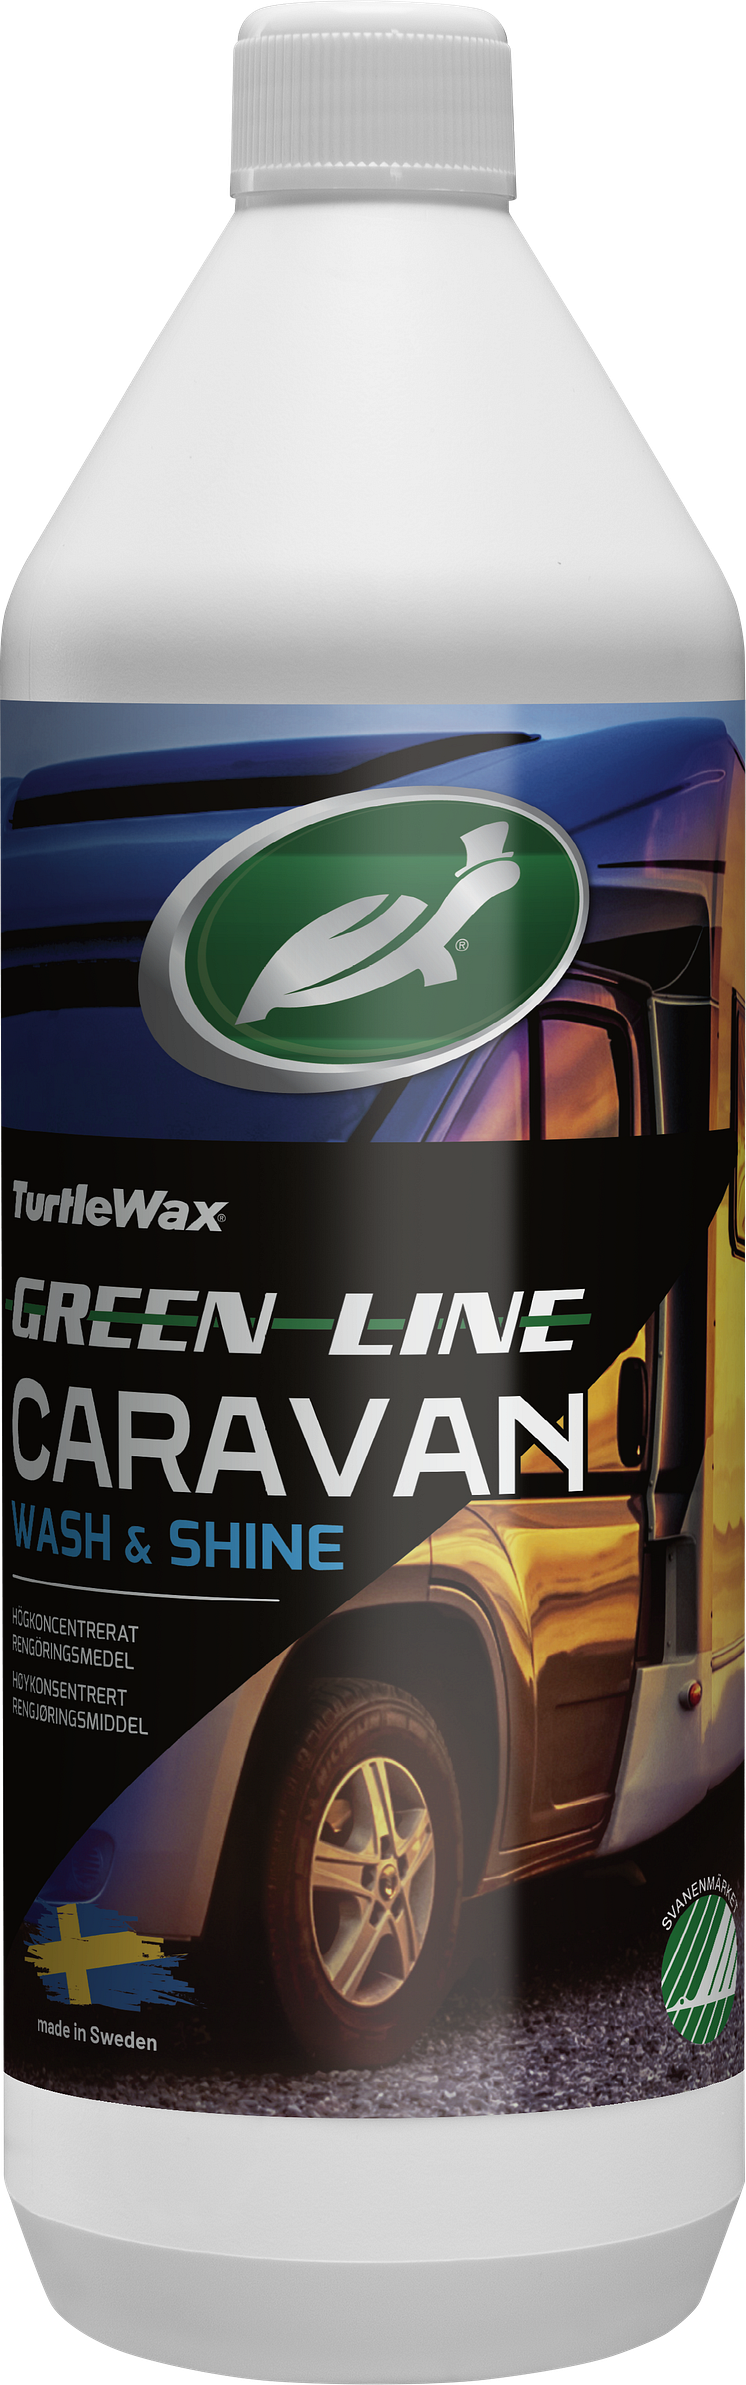 Turtle Wax Caravan Wash and Shine